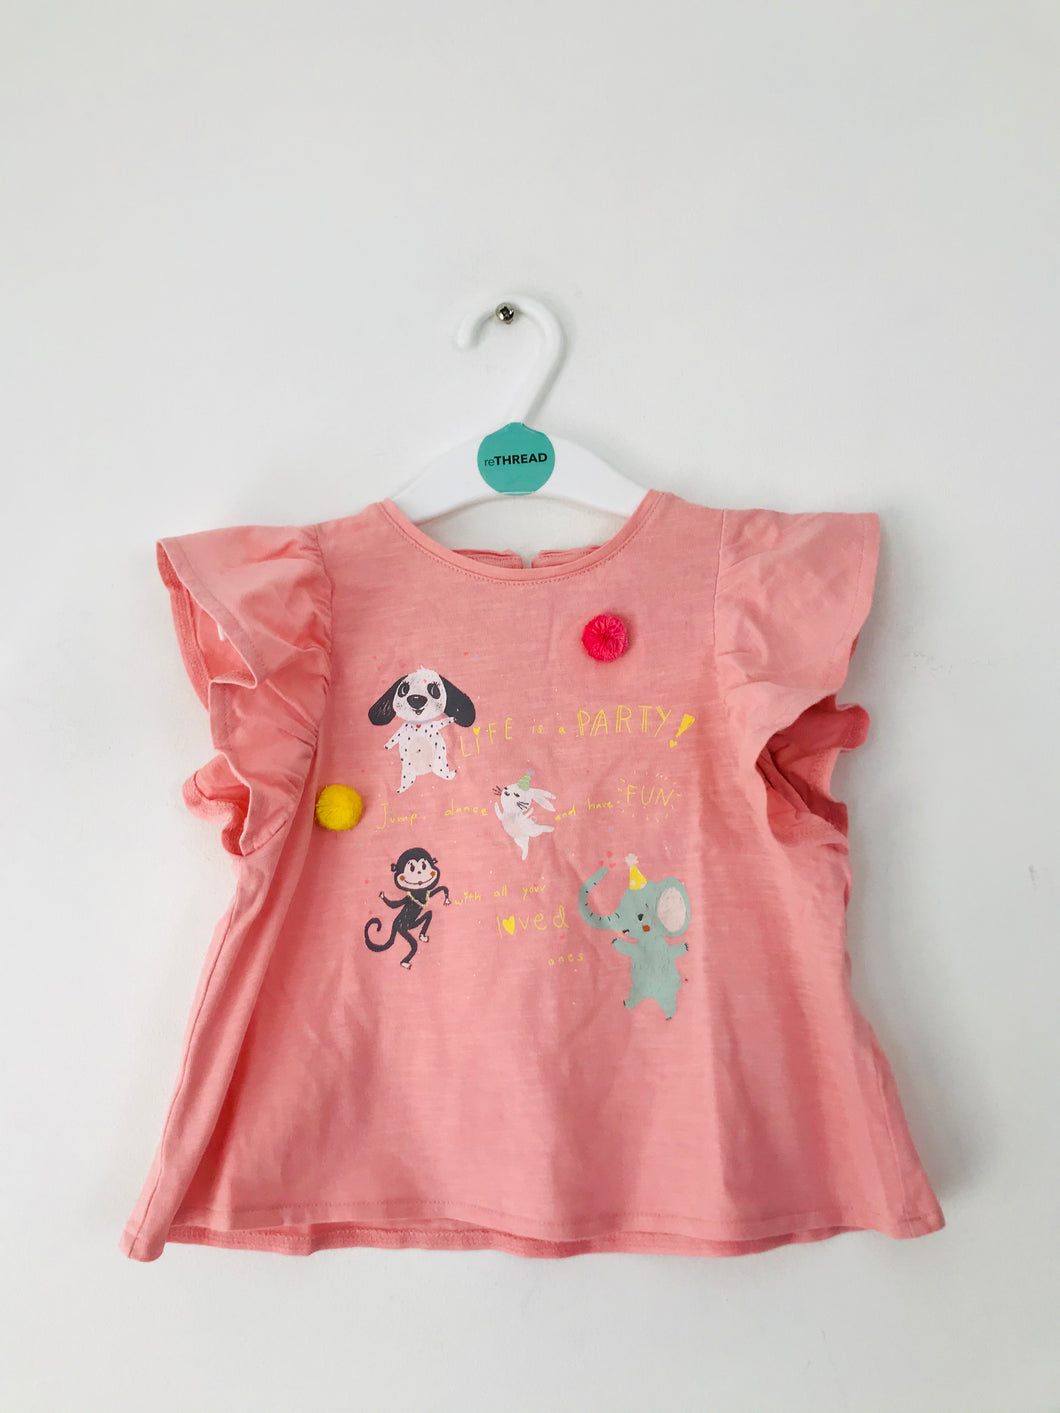 Zara Kids Ruffle Sleeve Shirt | 18-24 months | Pink